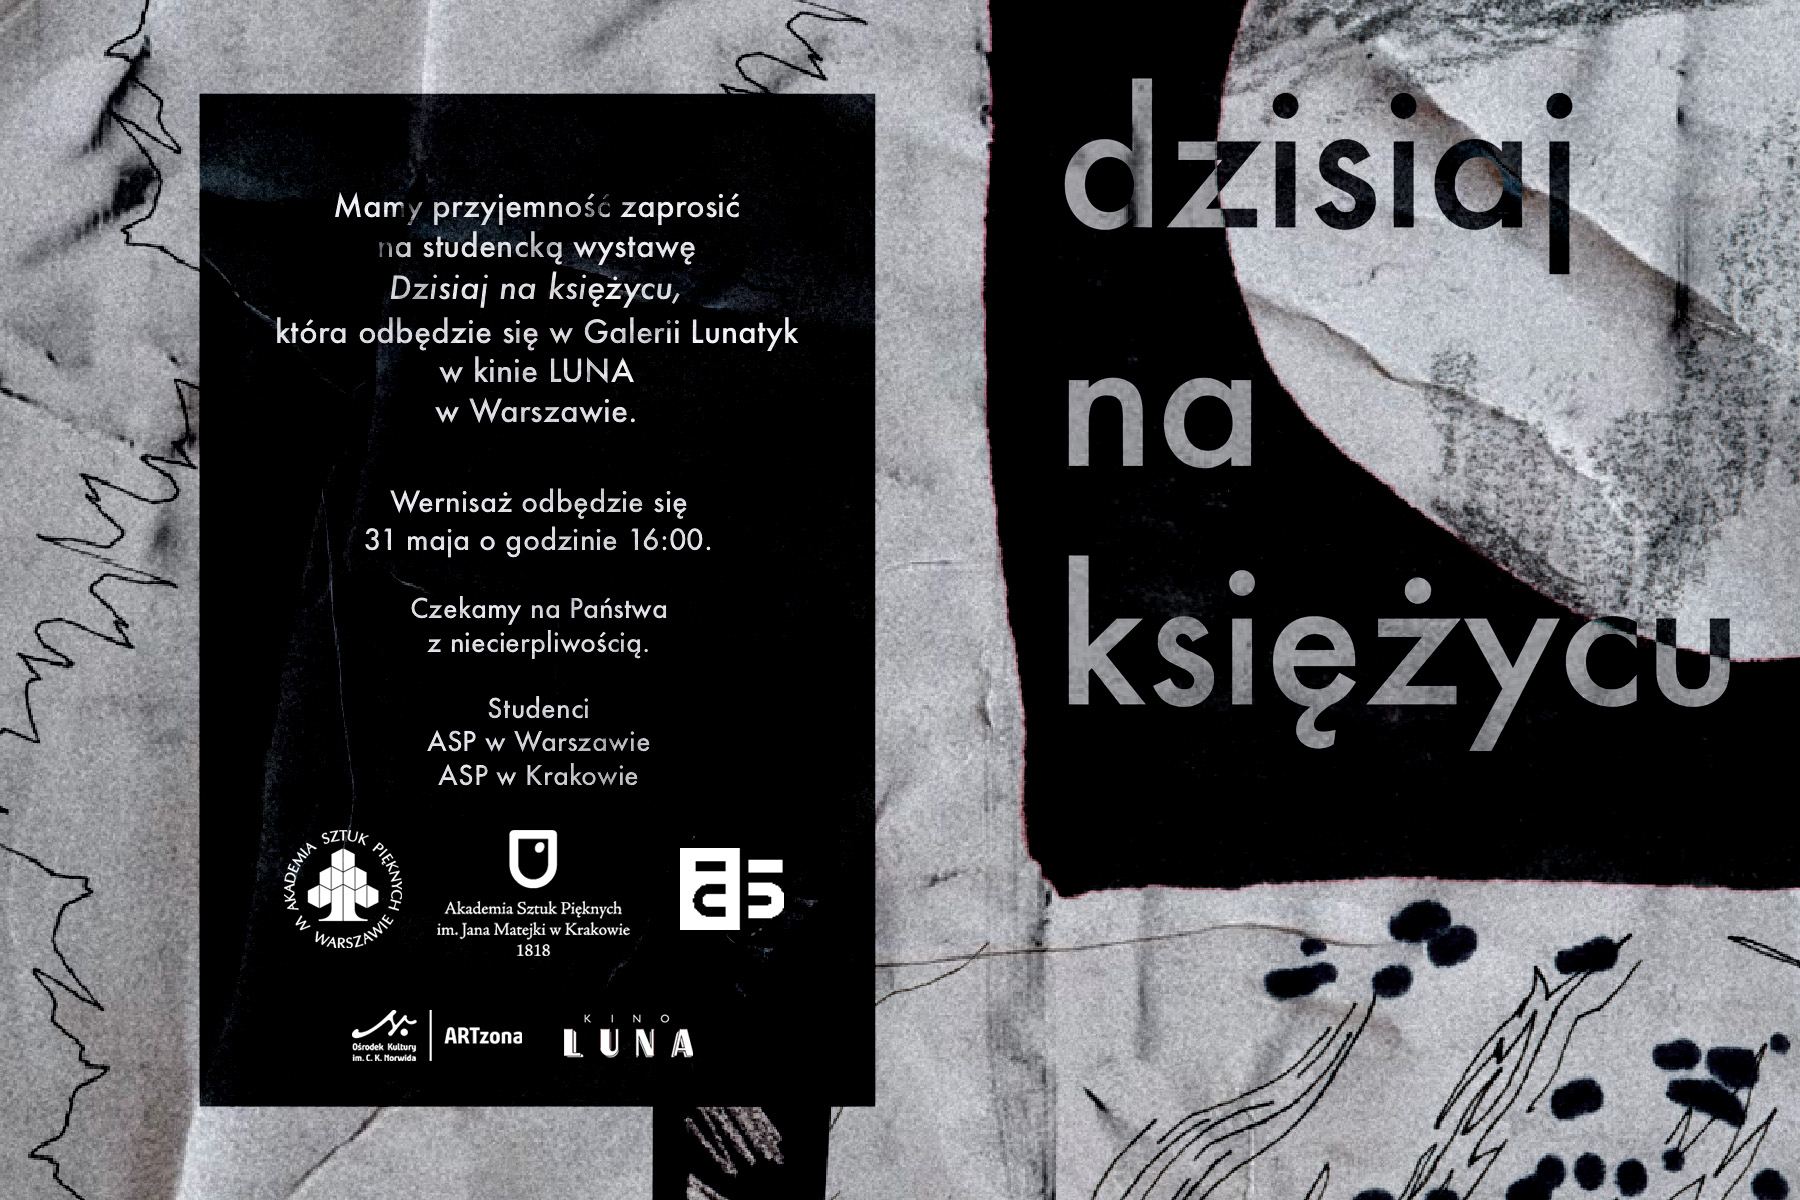 Wystawa studencka „Dzisiaj na księżycu” w galerii Lunatyk w Warszawie